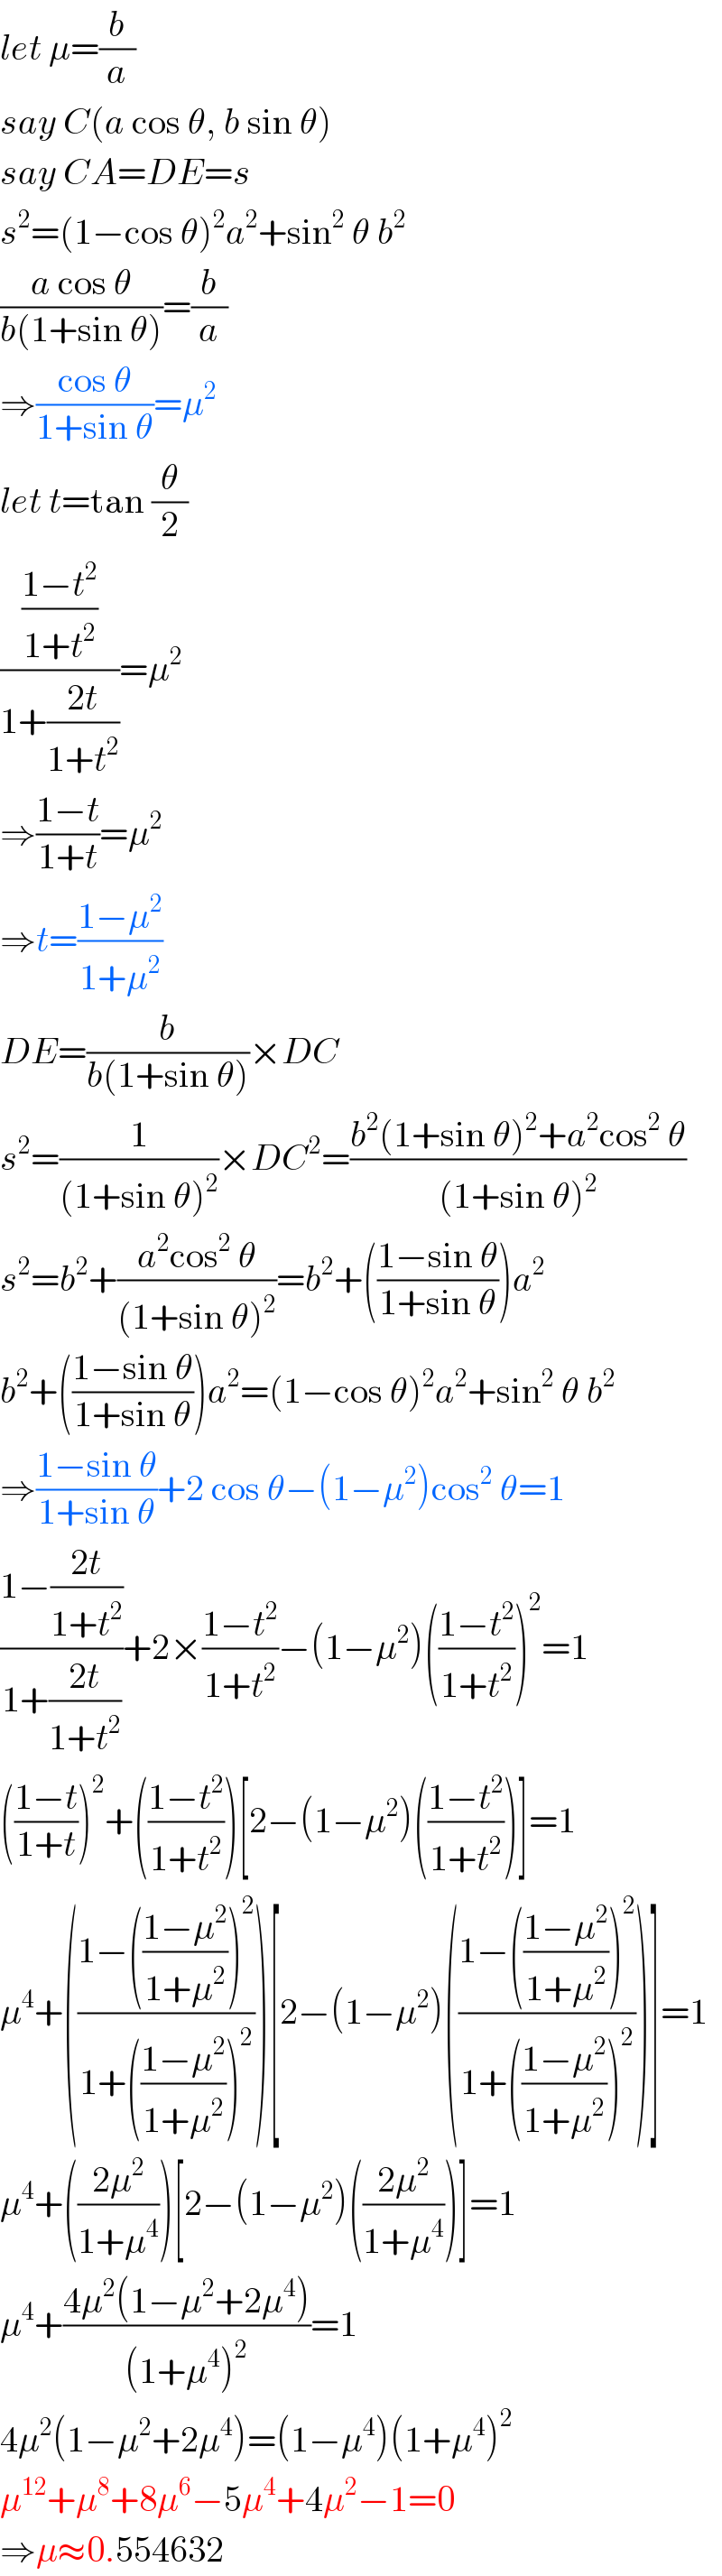 let μ=(b/a)  say C(a cos θ, b sin θ)  say CA=DE=s  s^2 =(1−cos θ)^2 a^2 +sin^2  θ b^2   ((a cos θ)/(b(1+sin θ)))=(b/a)  ⇒((cos θ)/(1+sin θ))=μ^2   let t=tan (θ/2)  (((1−t^2 )/(1+t^2 ))/(1+((2t)/(1+t^2 ))))=μ^2   ⇒((1−t)/(1+t))=μ^2   ⇒t=((1−μ^2 )/(1+μ^2 ))  DE=(b/(b(1+sin θ)))×DC  s^2 =(1/((1+sin θ)^2 ))×DC^2 =((b^2 (1+sin θ)^2 +a^2 cos^2  θ)/((1+sin θ)^2 ))  s^2 =b^2 +((a^2 cos^2  θ)/((1+sin θ)^2 ))=b^2 +(((1−sin θ)/(1+sin θ)))a^2   b^2 +(((1−sin θ)/(1+sin θ)))a^2 =(1−cos θ)^2 a^2 +sin^2  θ b^2   ⇒((1−sin θ)/(1+sin θ))+2 cos θ−(1−μ^2 )cos^2  θ=1  ((1−((2t)/(1+t^2 )))/(1+((2t)/(1+t^2 ))))+2×((1−t^2 )/(1+t^2 ))−(1−μ^2 )(((1−t^2 )/(1+t^2 )))^2 =1  (((1−t)/(1+t)))^2 +(((1−t^2 )/(1+t^2 )))[2−(1−μ^2 )(((1−t^2 )/(1+t^2 )))]=1  μ^4 +(((1−(((1−μ^2 )/(1+μ^2 )))^2 )/(1+(((1−μ^2 )/(1+μ^2 )))^2 )))[2−(1−μ^2 )(((1−(((1−μ^2 )/(1+μ^2 )))^2 )/(1+(((1−μ^2 )/(1+μ^2 )))^2 )))]=1  μ^4 +(((2μ^2 )/(1+μ^4 )))[2−(1−μ^2 )(((2μ^2 )/(1+μ^4 )))]=1  μ^4 +((4μ^2 (1−μ^2 +2μ^4 ))/((1+μ^4 )^2 ))=1  4μ^2 (1−μ^2 +2μ^4 )=(1−μ^4 )(1+μ^4 )^2   μ^(12) +μ^8 +8μ^6 −5μ^4 +4μ^2 −1=0  ⇒μ≈0.554632  